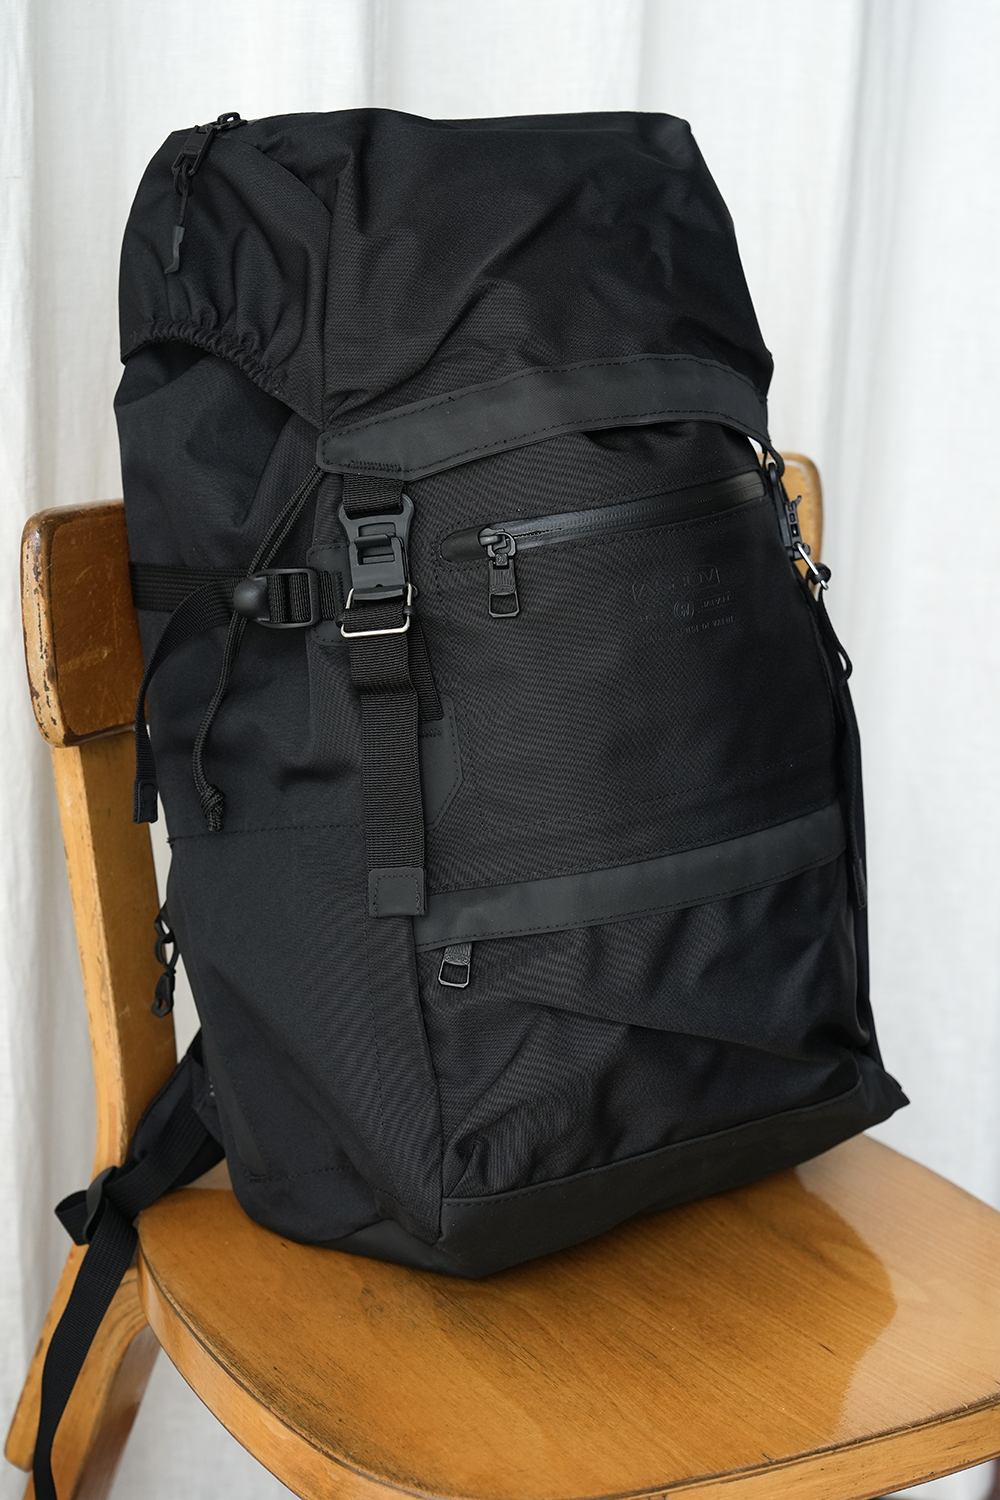 Backpack water resistant cordura